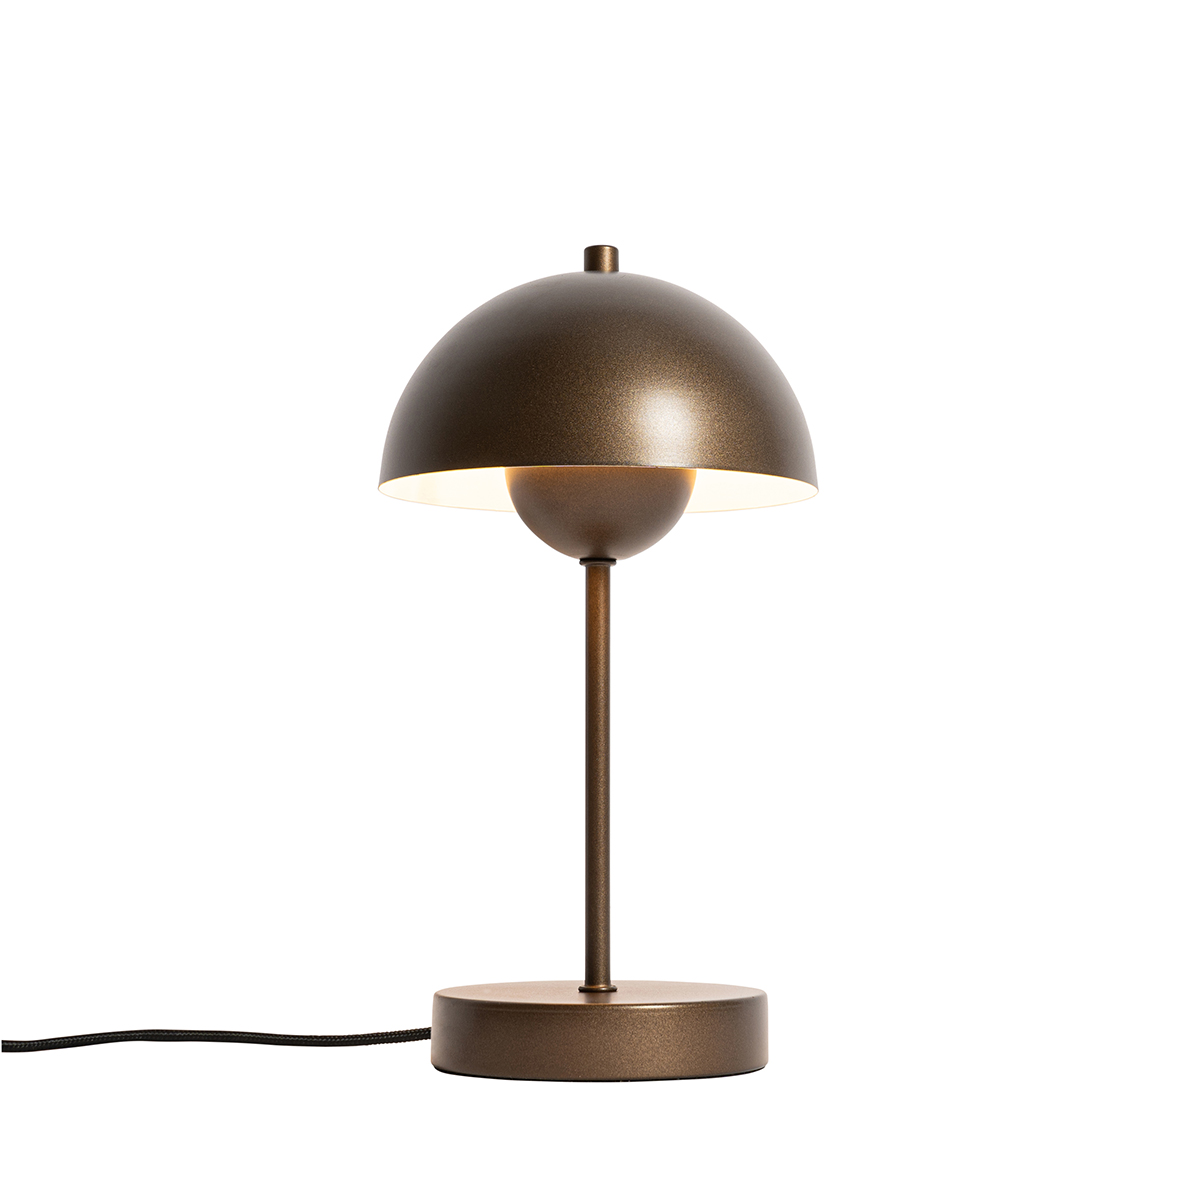 Retro table lamp dark bronze - Magnax Mini